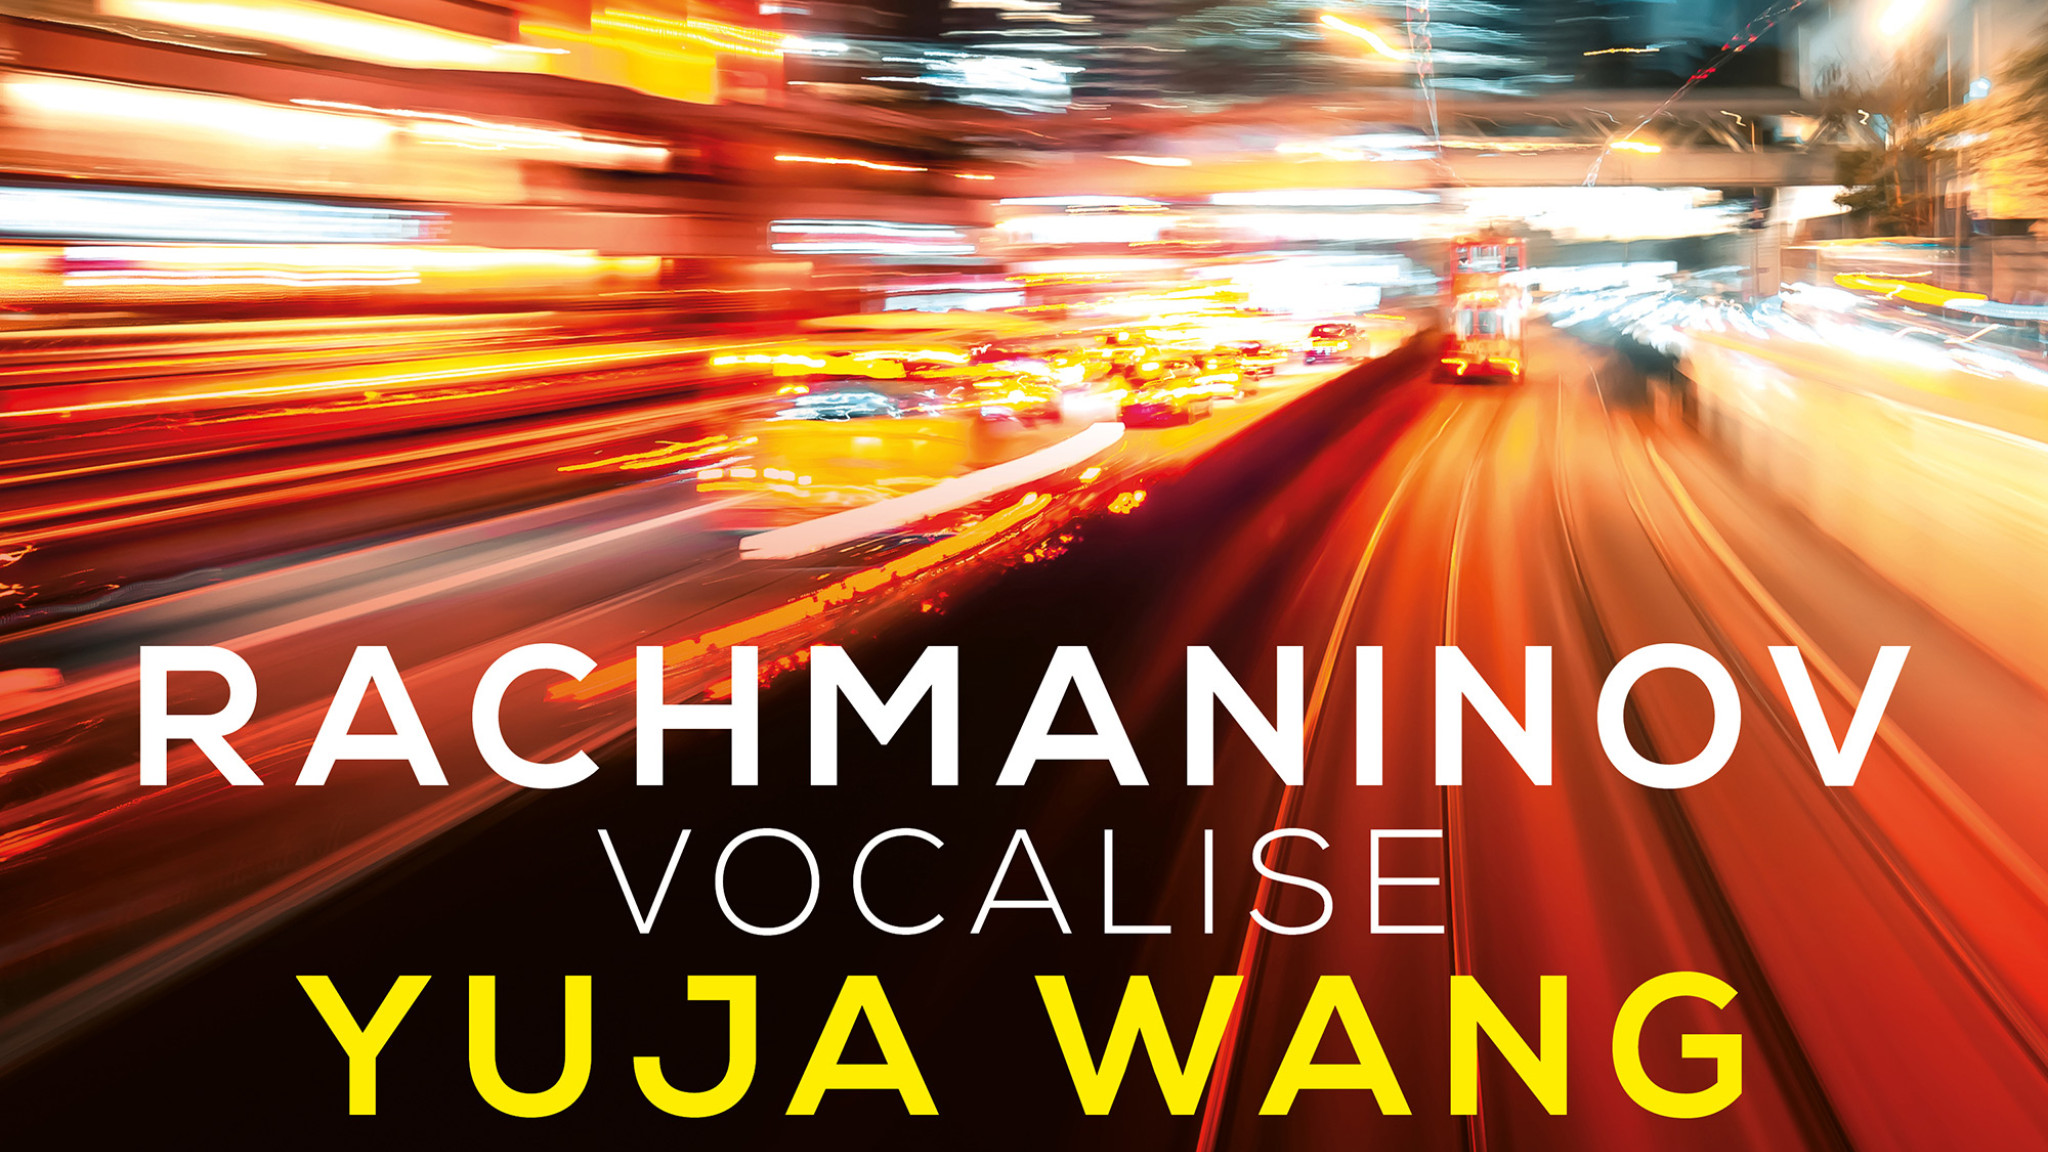 Musical Moments - Yuja Wang